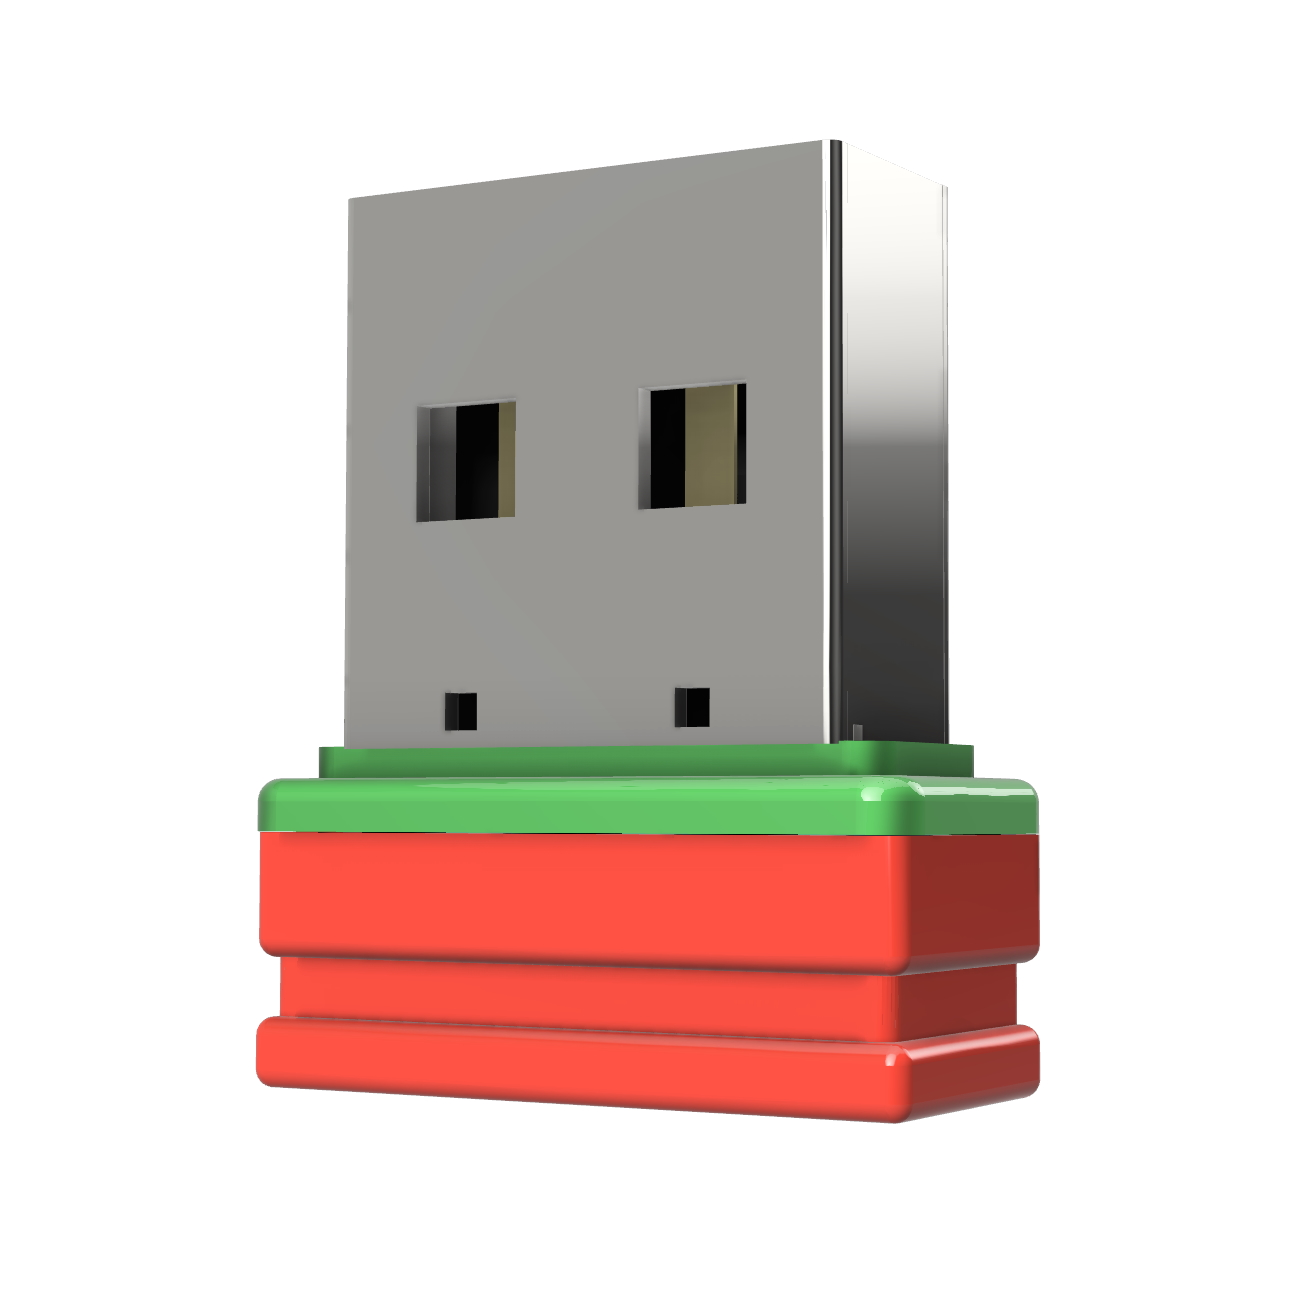 4 USB P1 ®ULTRA GB) (Rot/Grün, GERMANY USB-Stick Mini